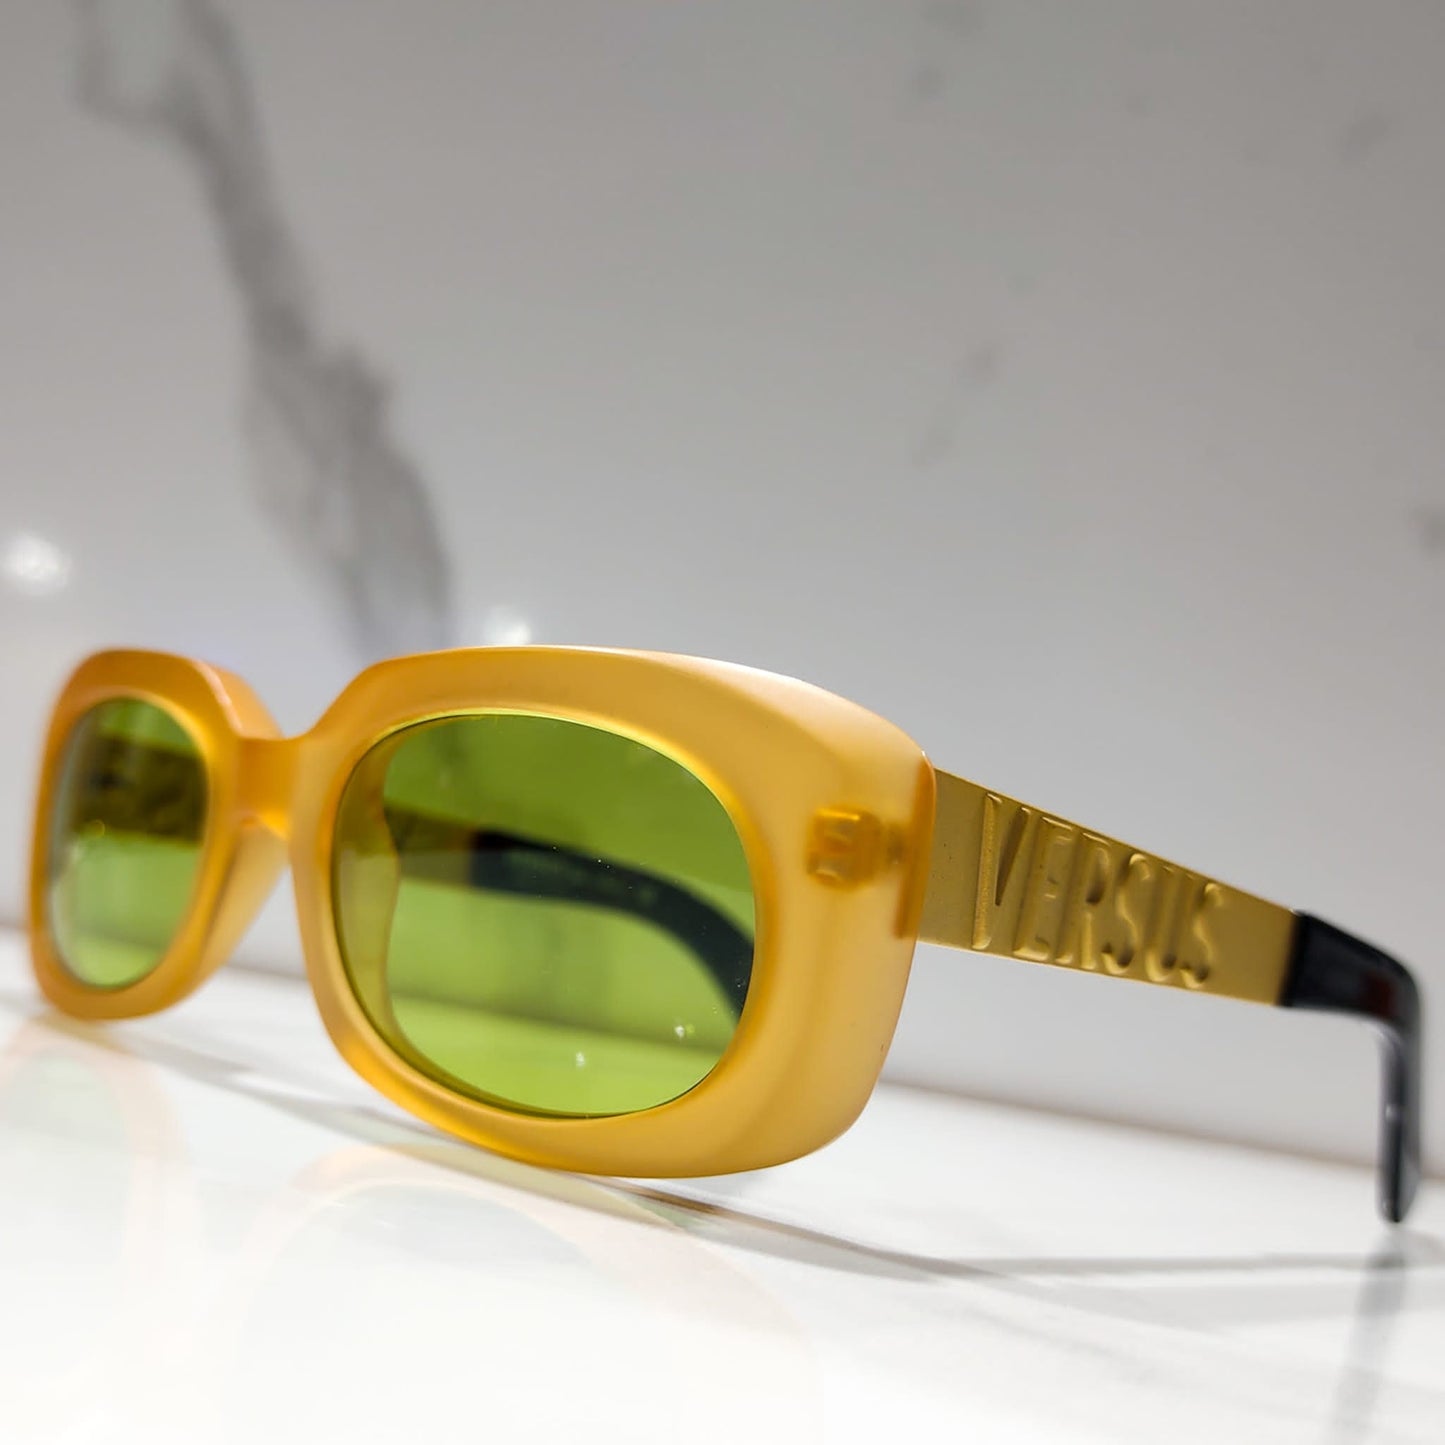 Gianni Versace Versus mod E33 sunglasses vintage 90s occhiali lunette